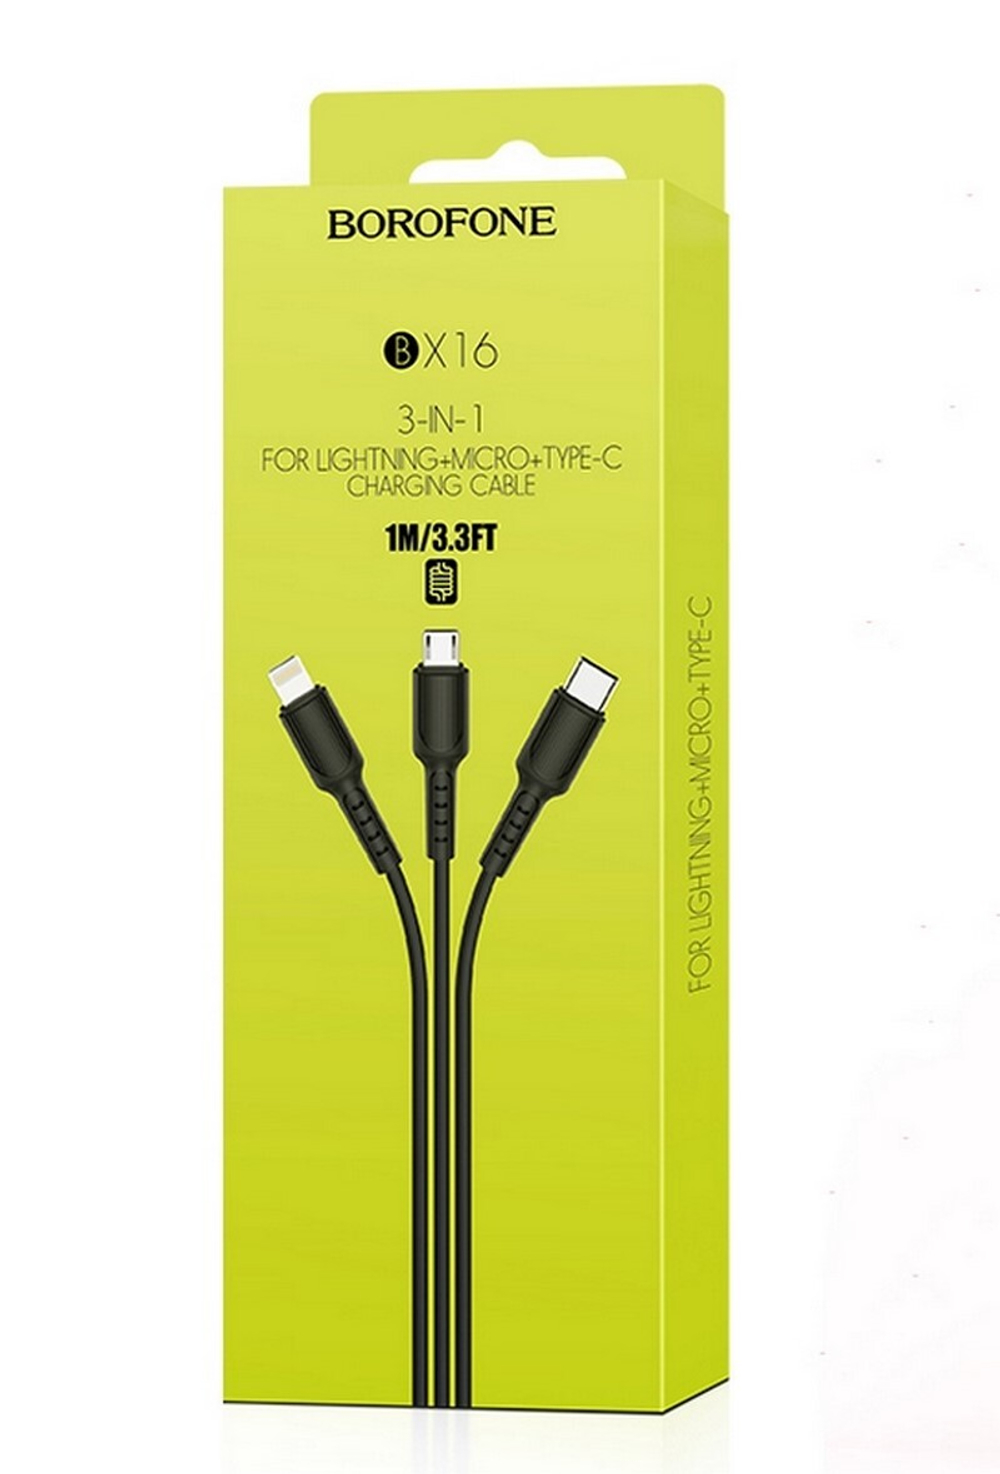 Кабель USB BOROFONE BX16 3 в 1 для iPhone/Micro/Type C (черный) 1m